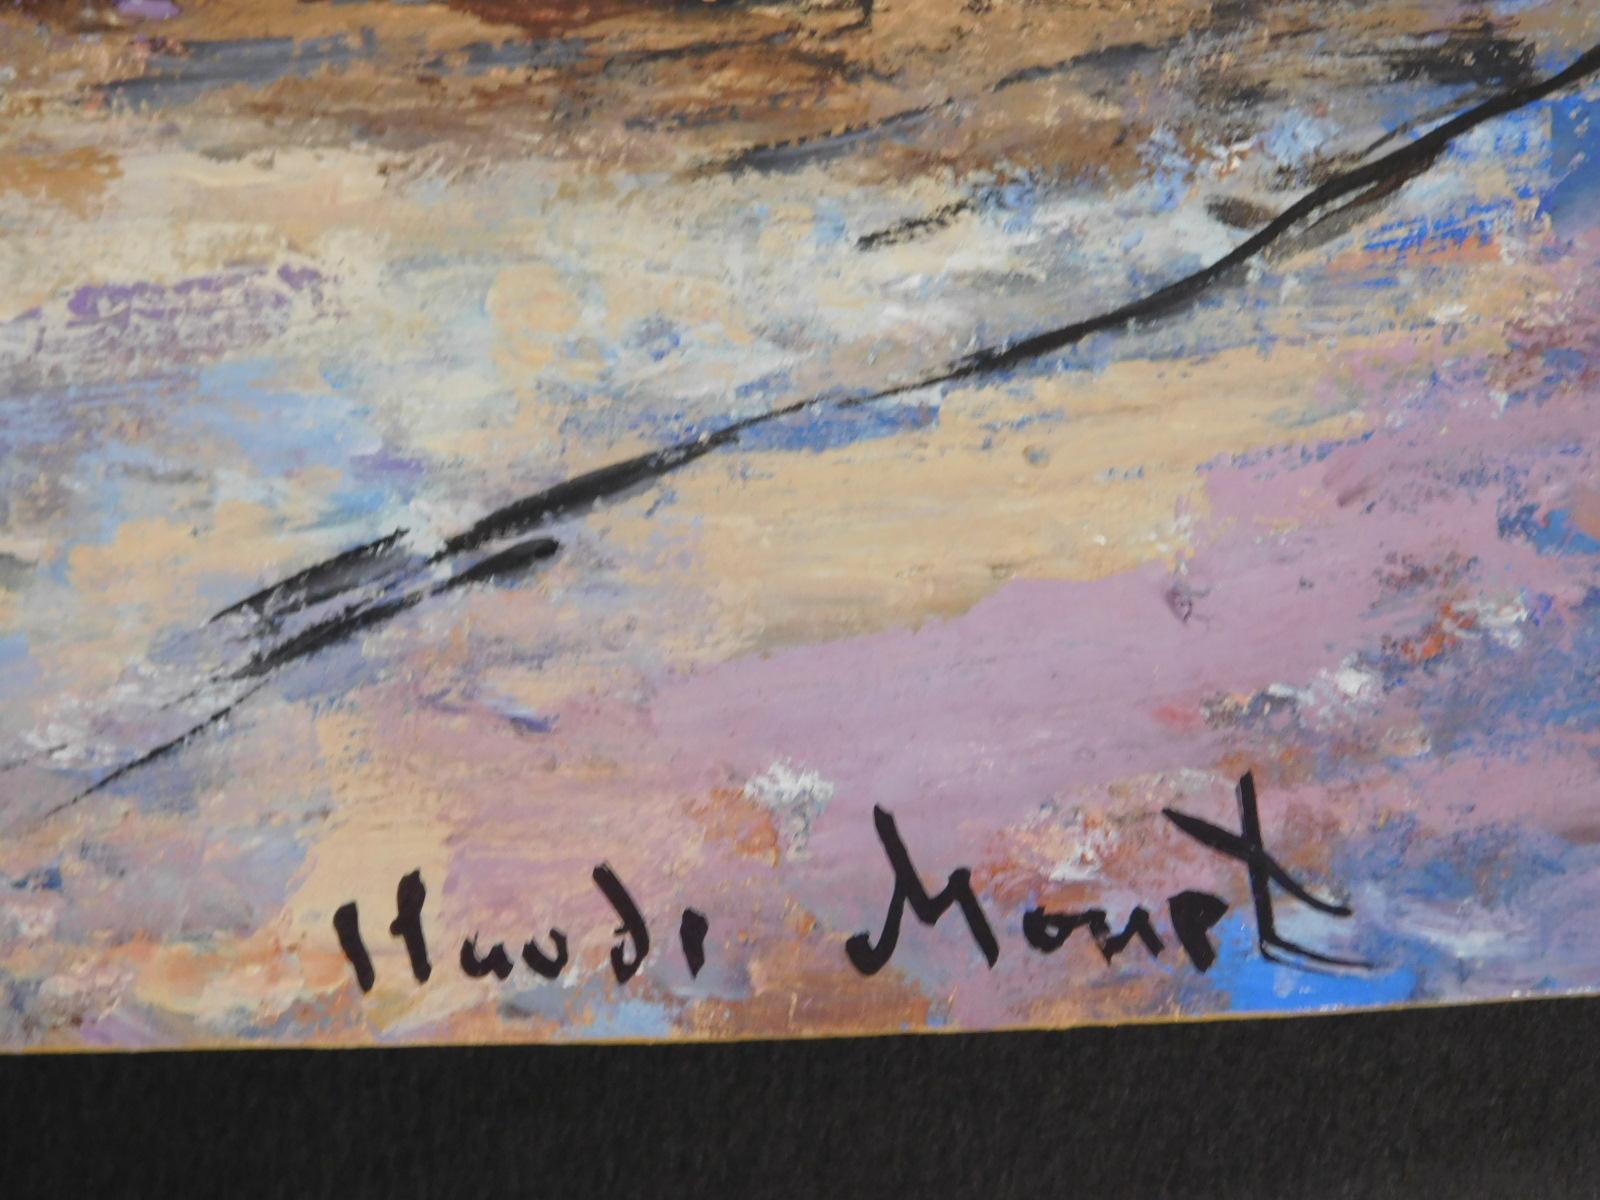 Claude Monet: Low Tide